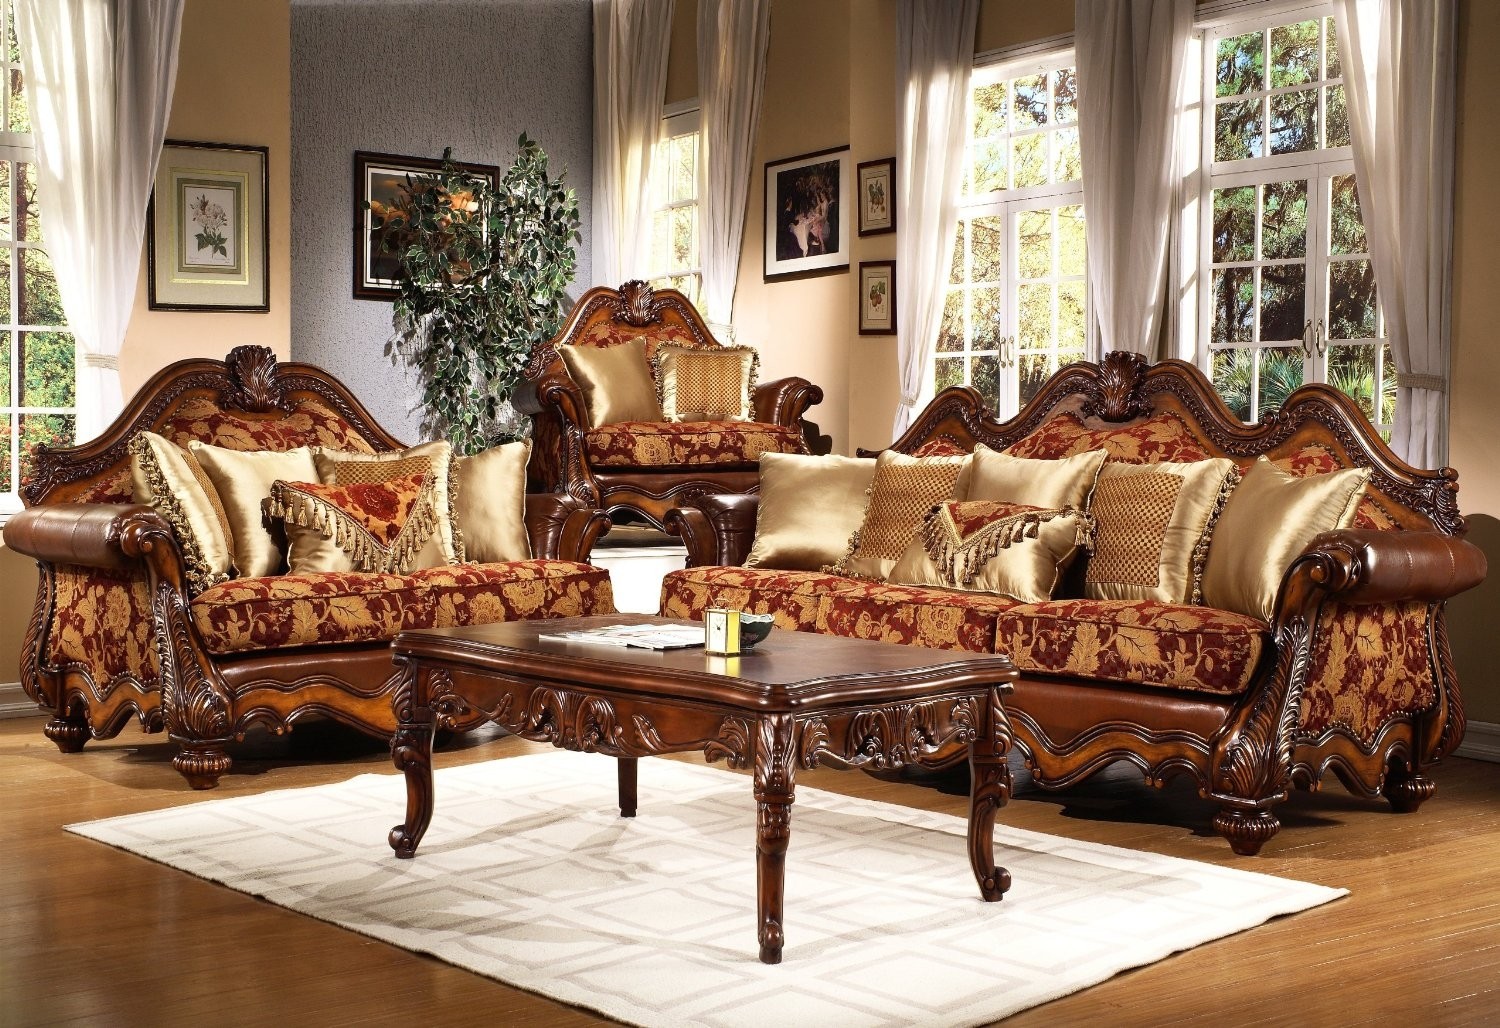 Victorian living room furniture set